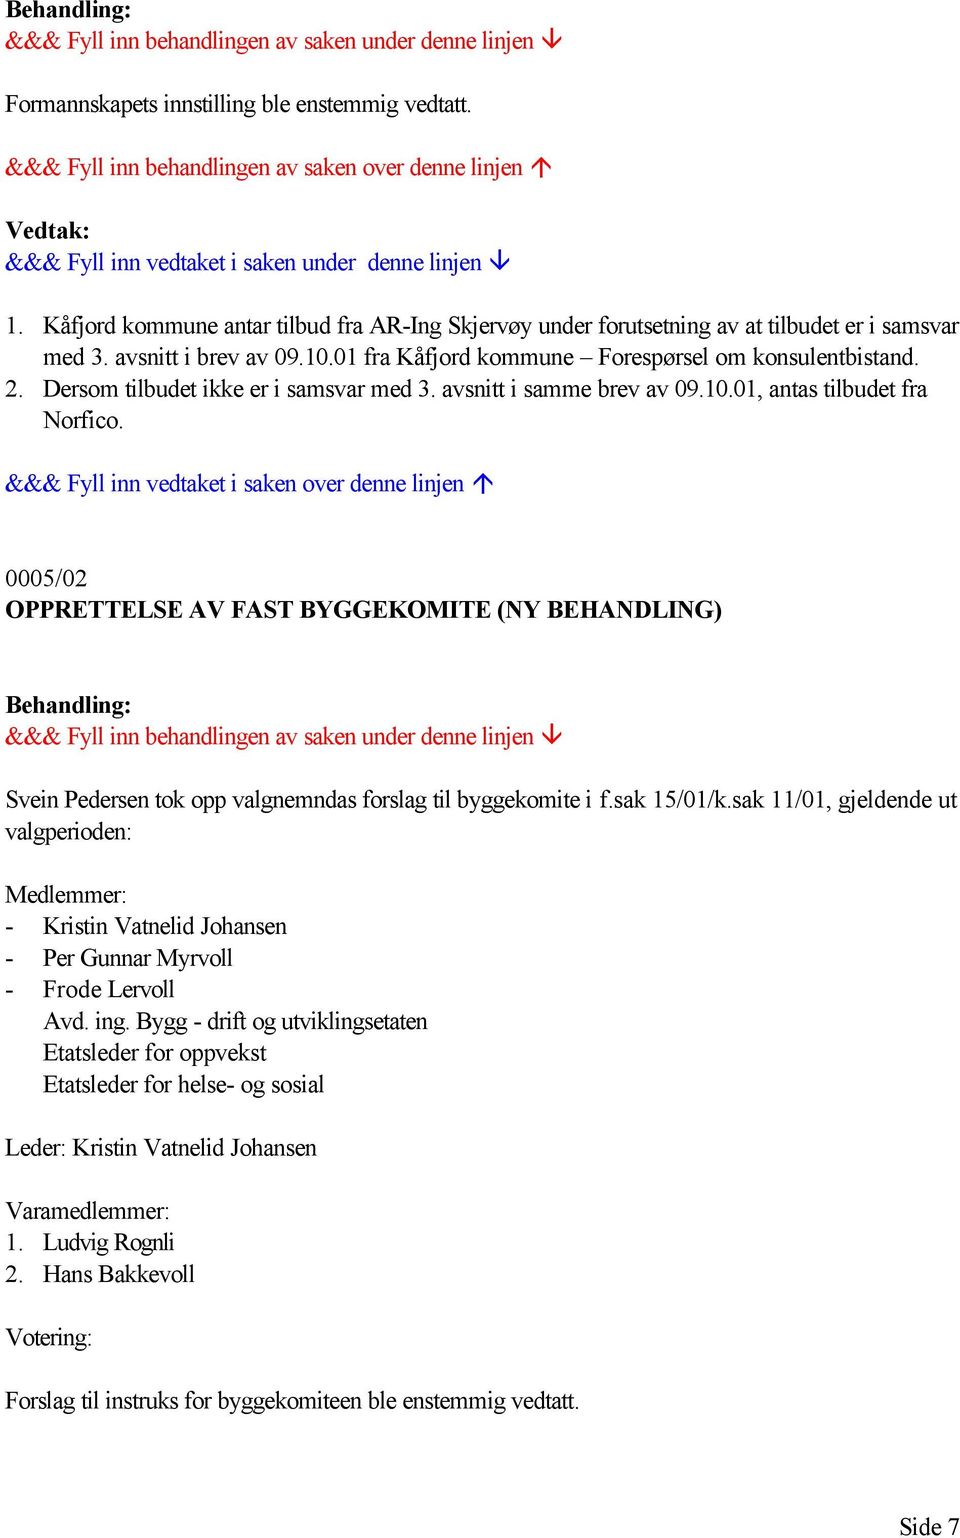 0005/02 OPPRETTELSE AV FAST BYGGEKOMITE (NY BEHANDLING) Svein Pedersen tok opp valgnemndas forslag til byggekomite i f.sak 15/01/k.